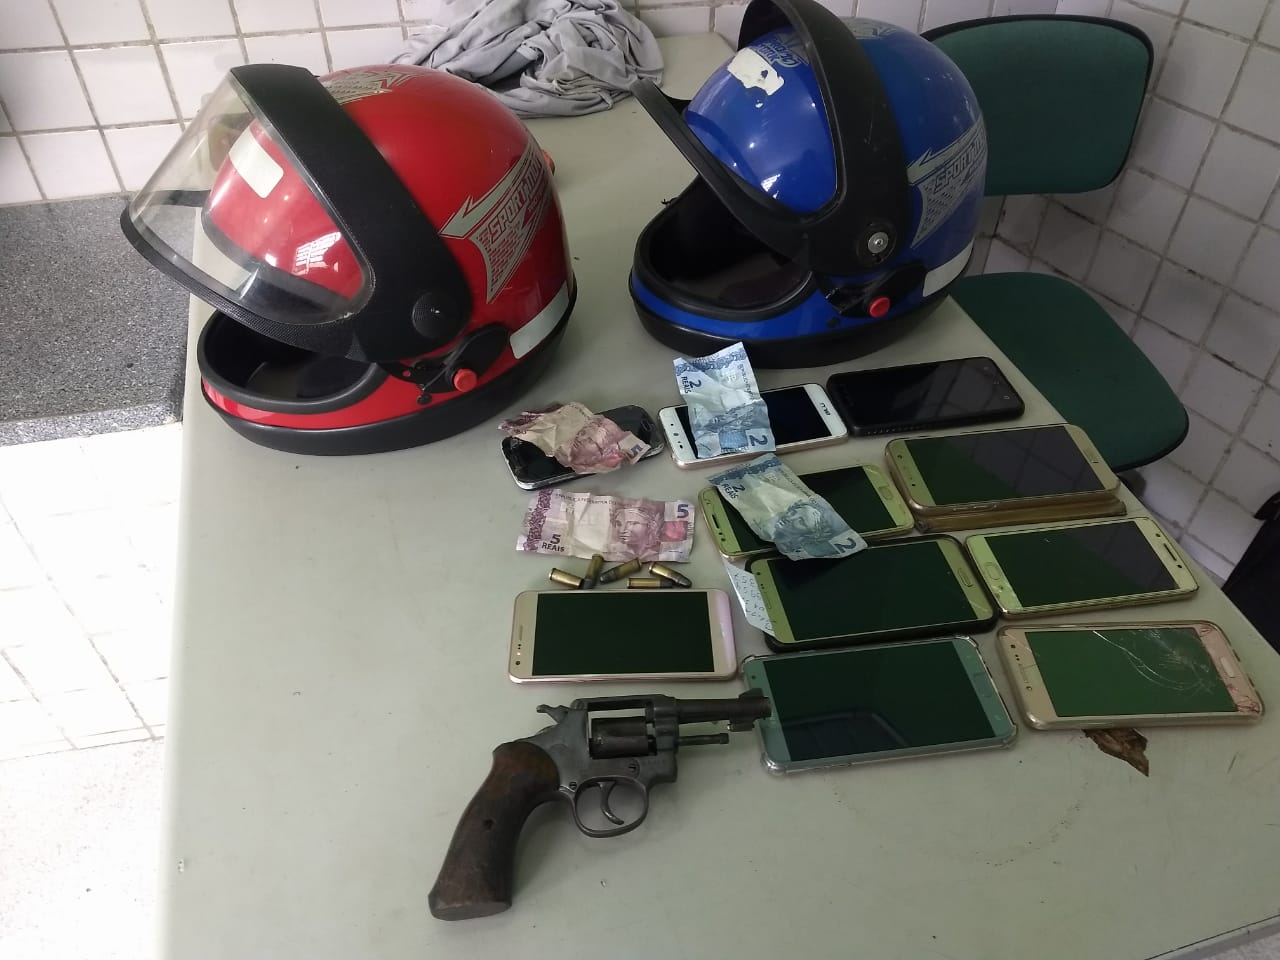 A Polícia Militar apreendeu dez celulares, a moto, e uma arma.